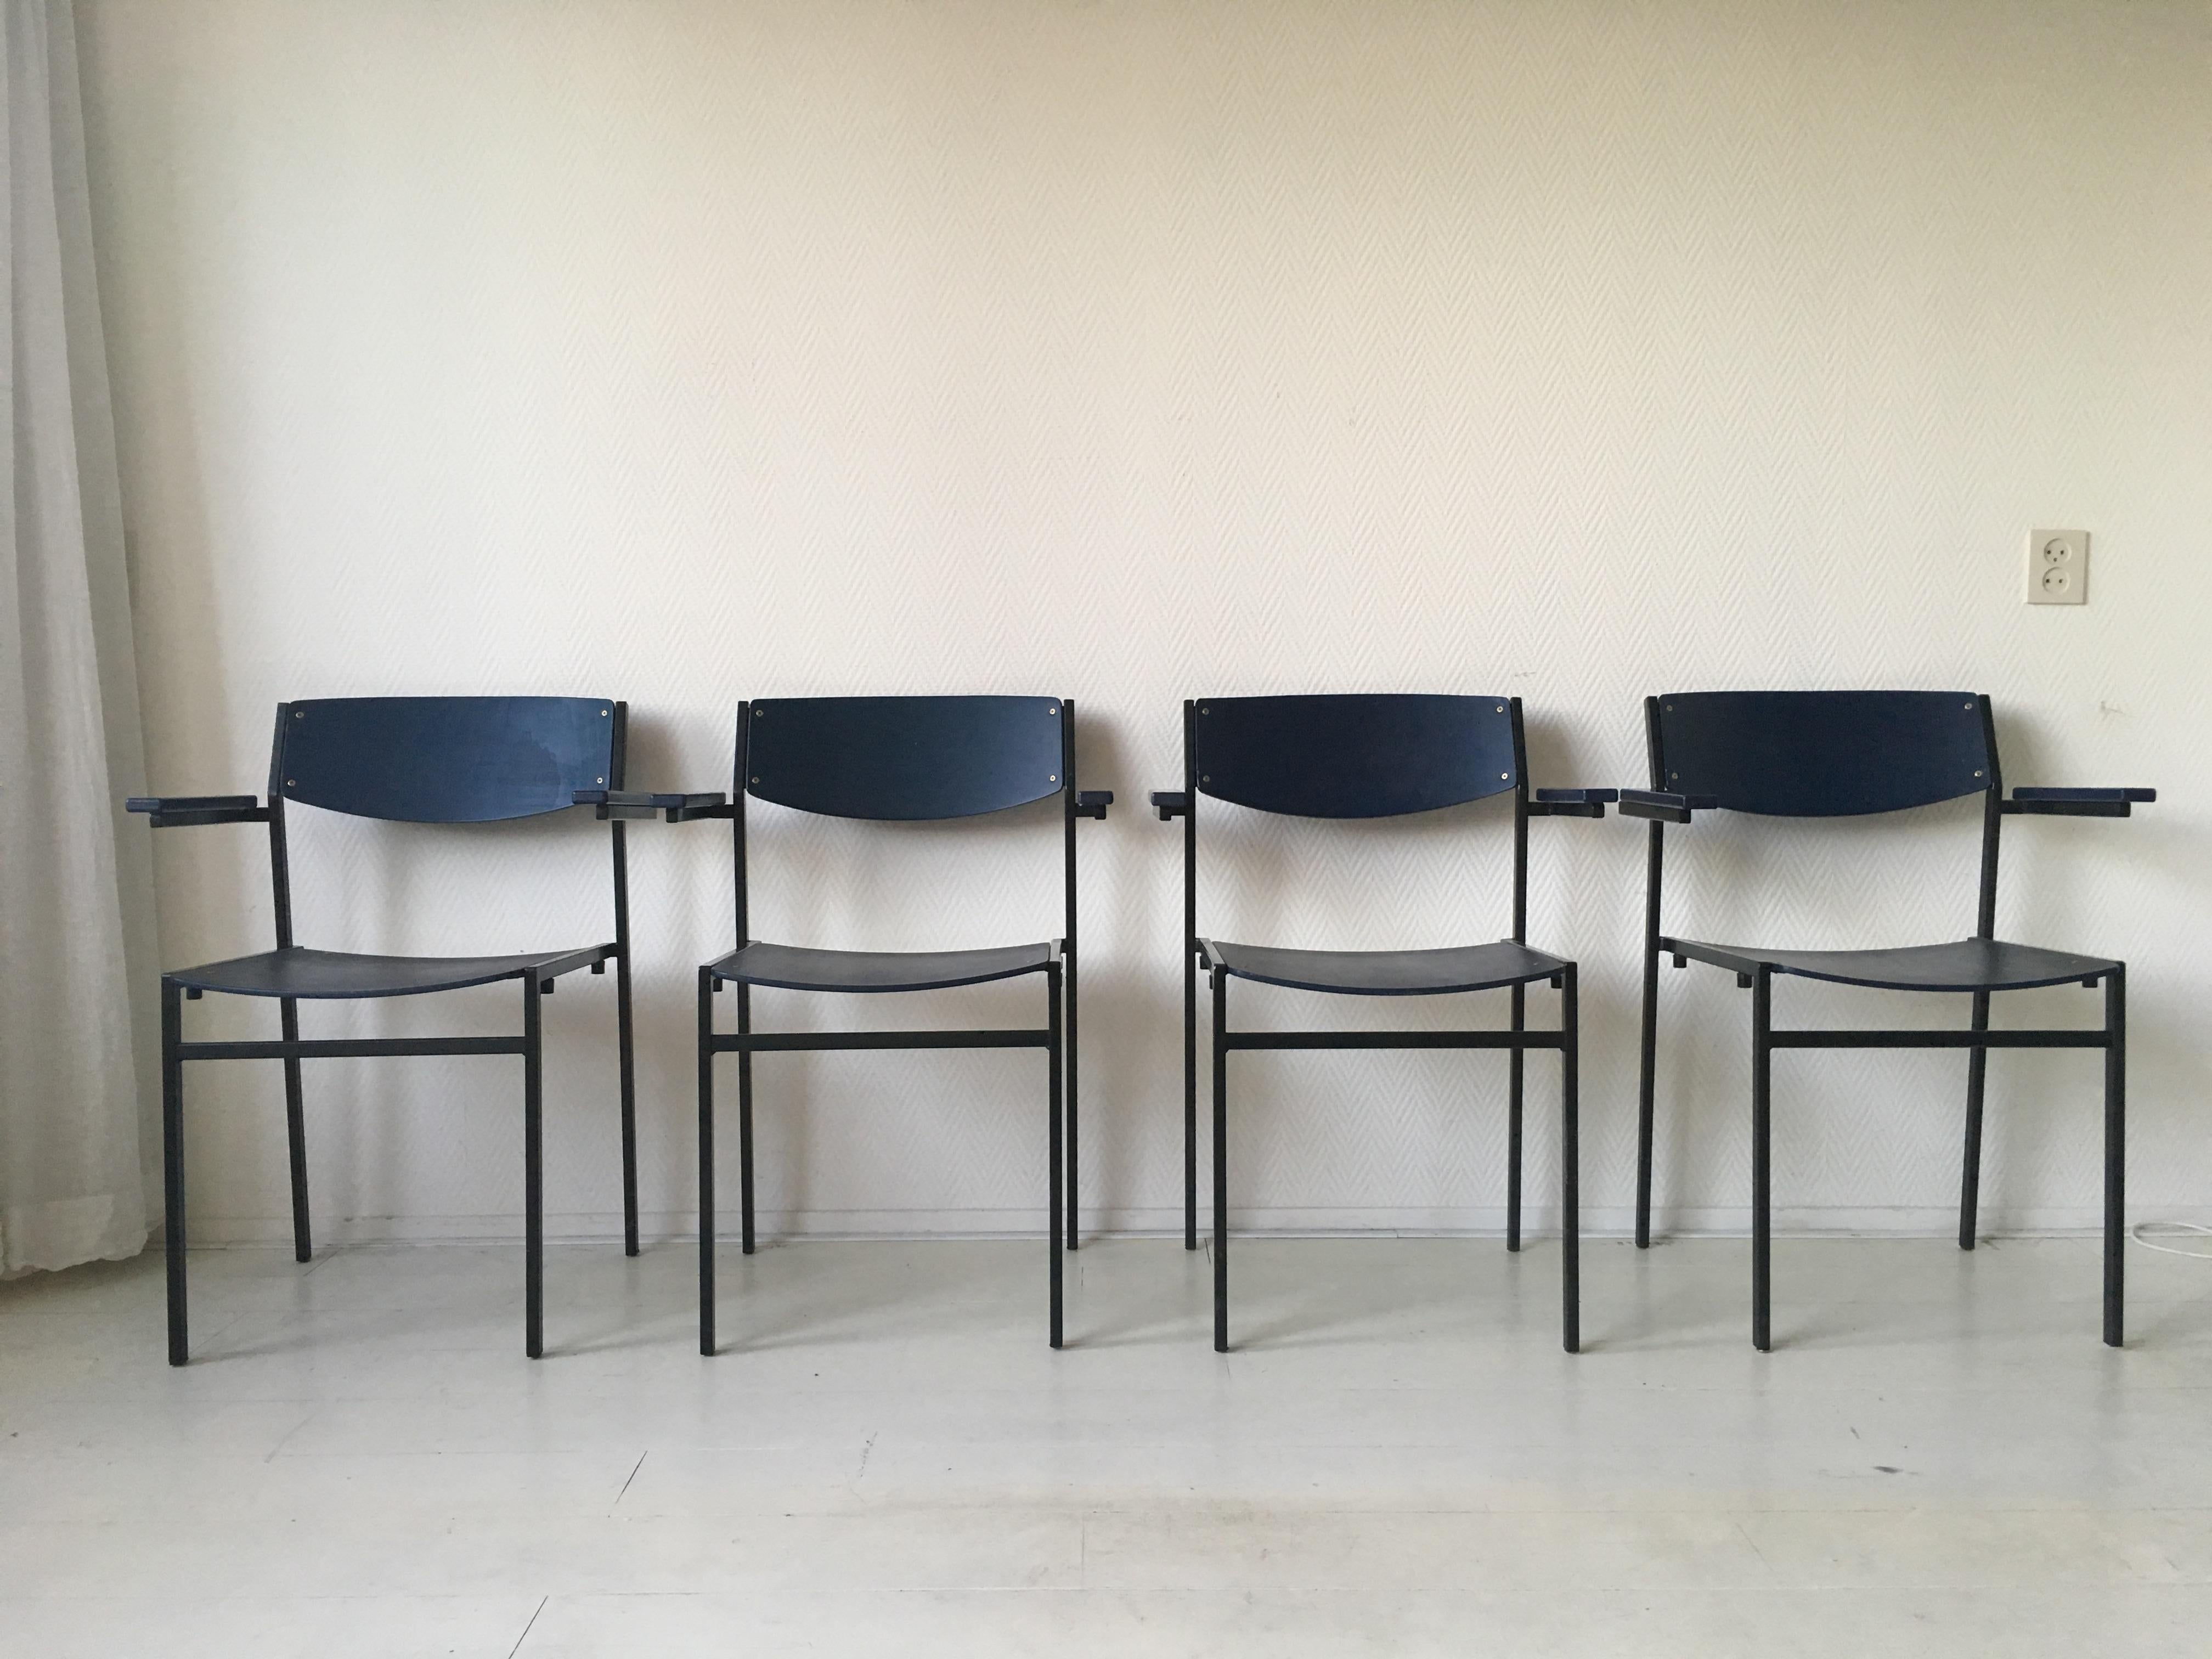 Cet ensemble de quatre fauteuils empilables de conception néerlandaise a été conçu par Gijs Van Der Sluis. Ils présentent une base en métal laqué noir et des assises et dossiers en contreplaqué bleu foncé. Des pièces multifonctionnelles (chaises